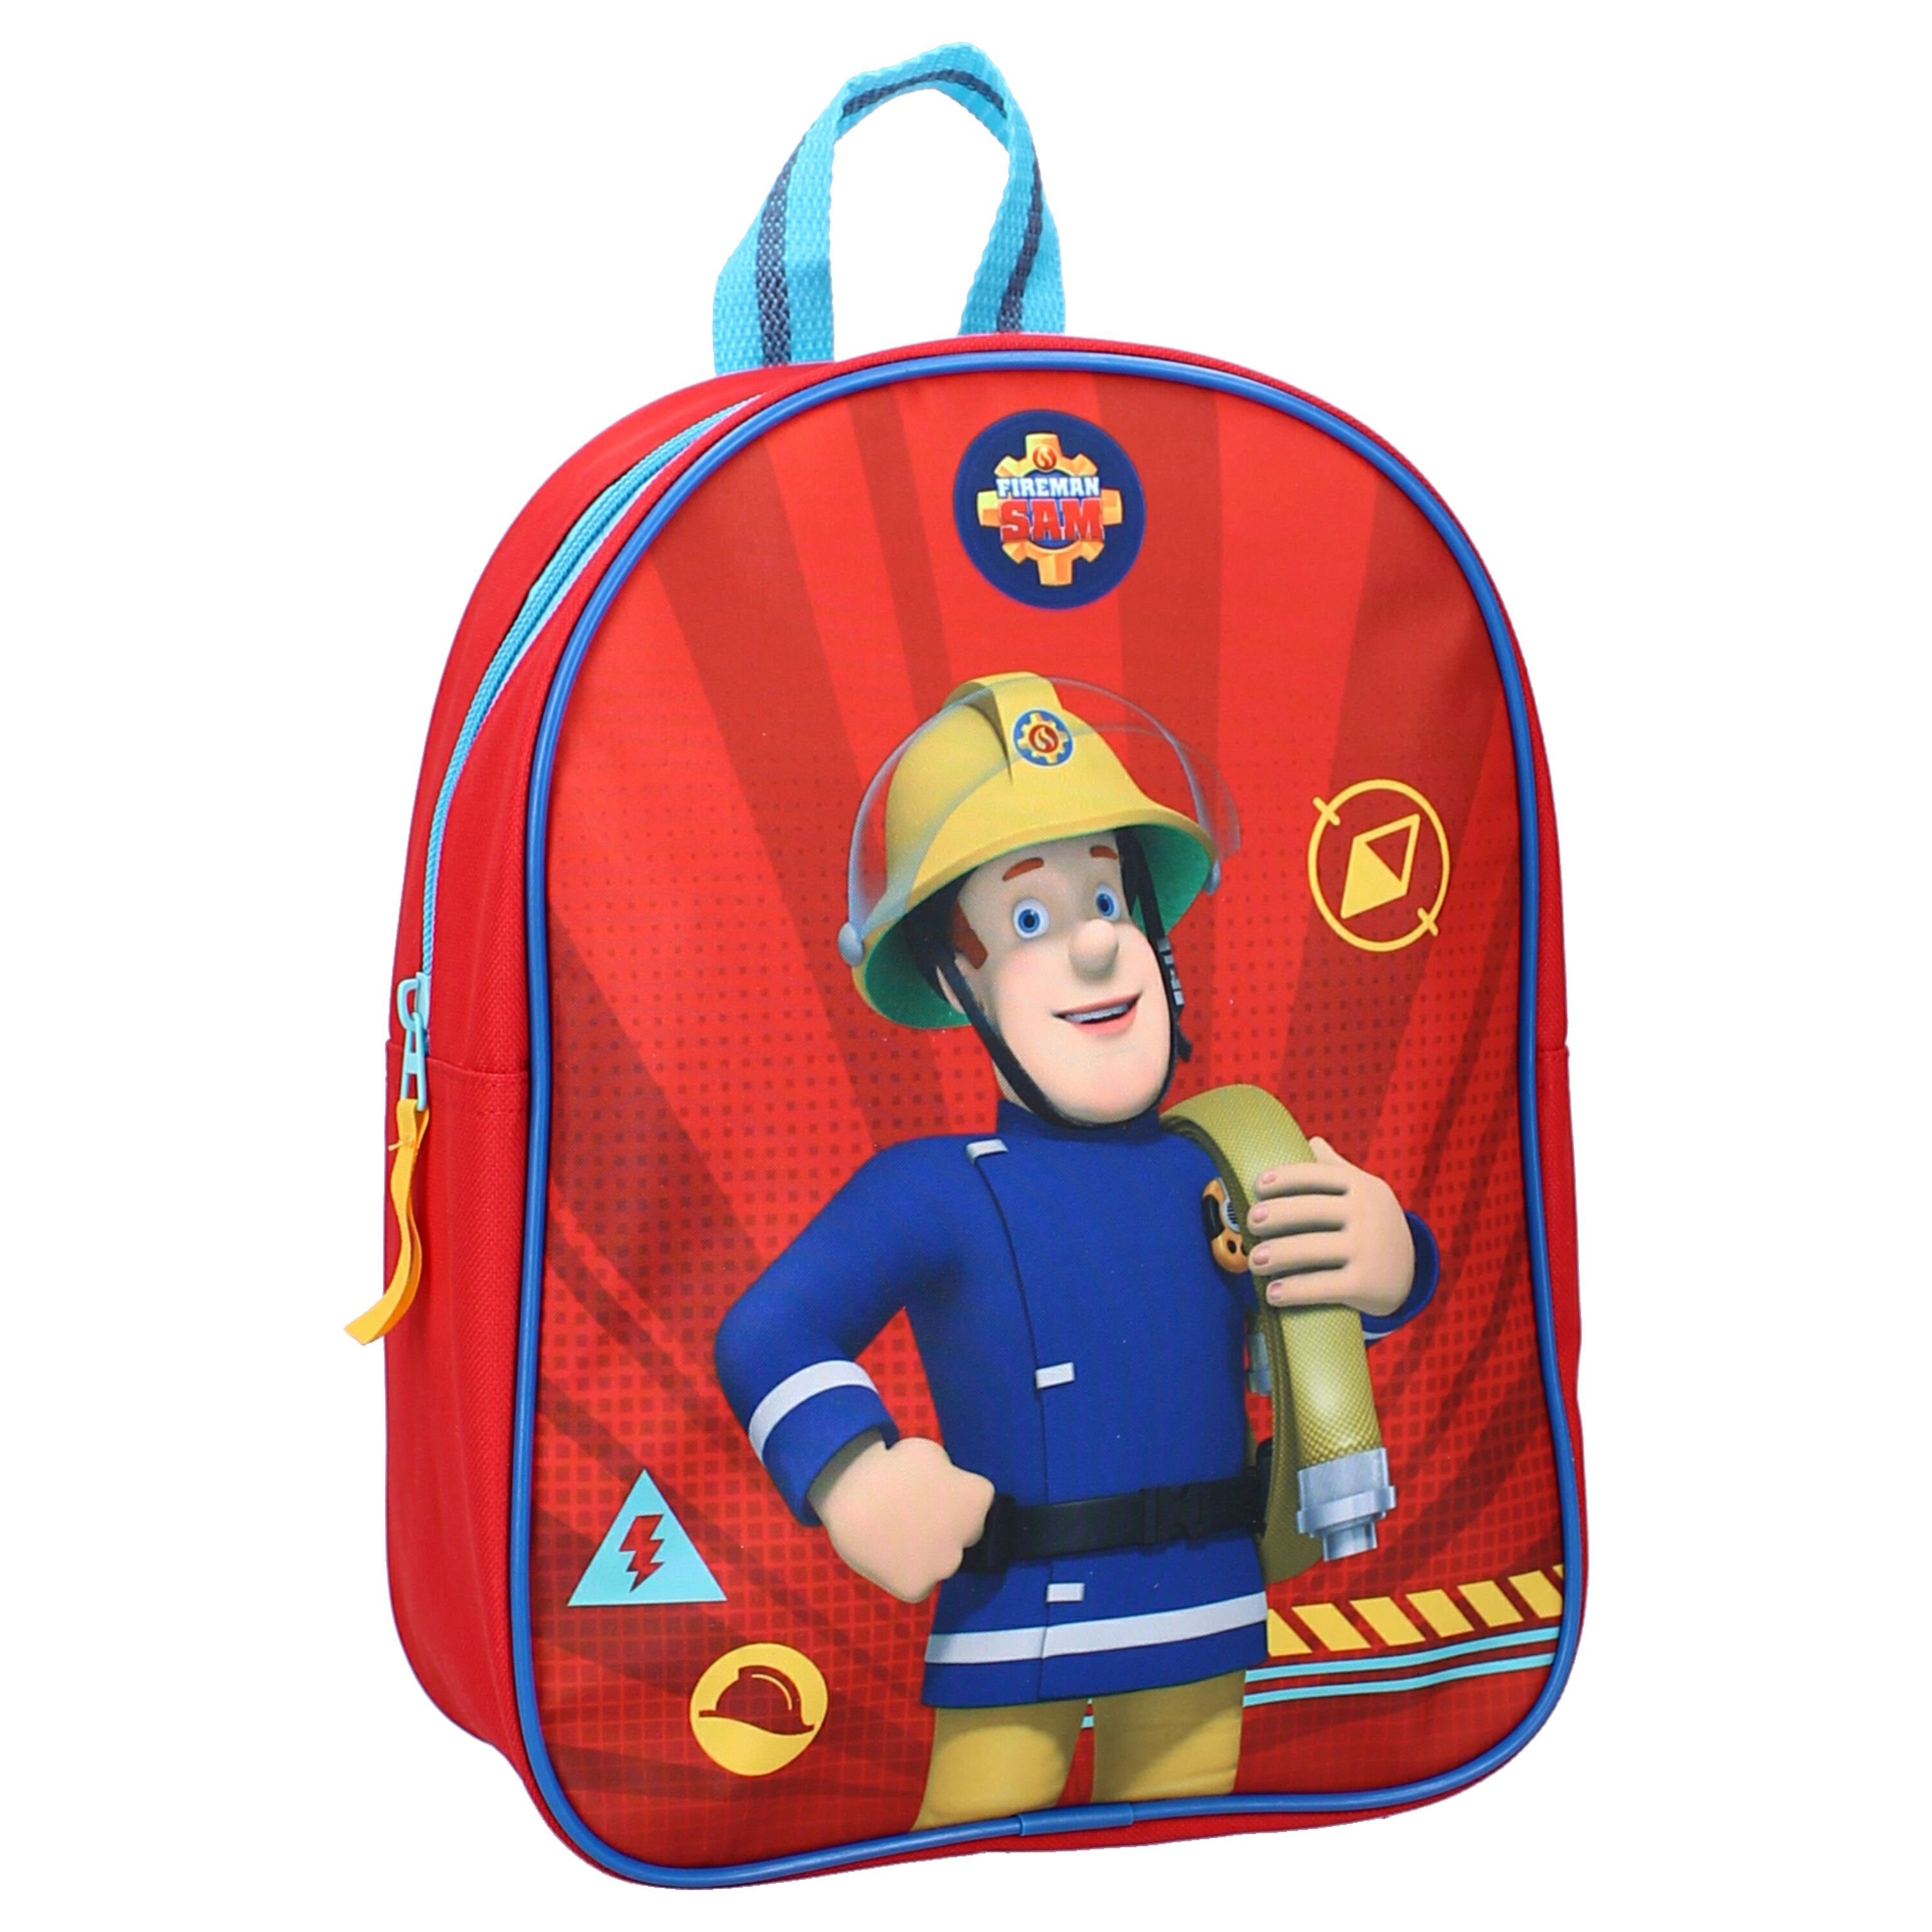 Kindermotiv Vadobag Fireman 5 Liter Kinderrucksack Sam,